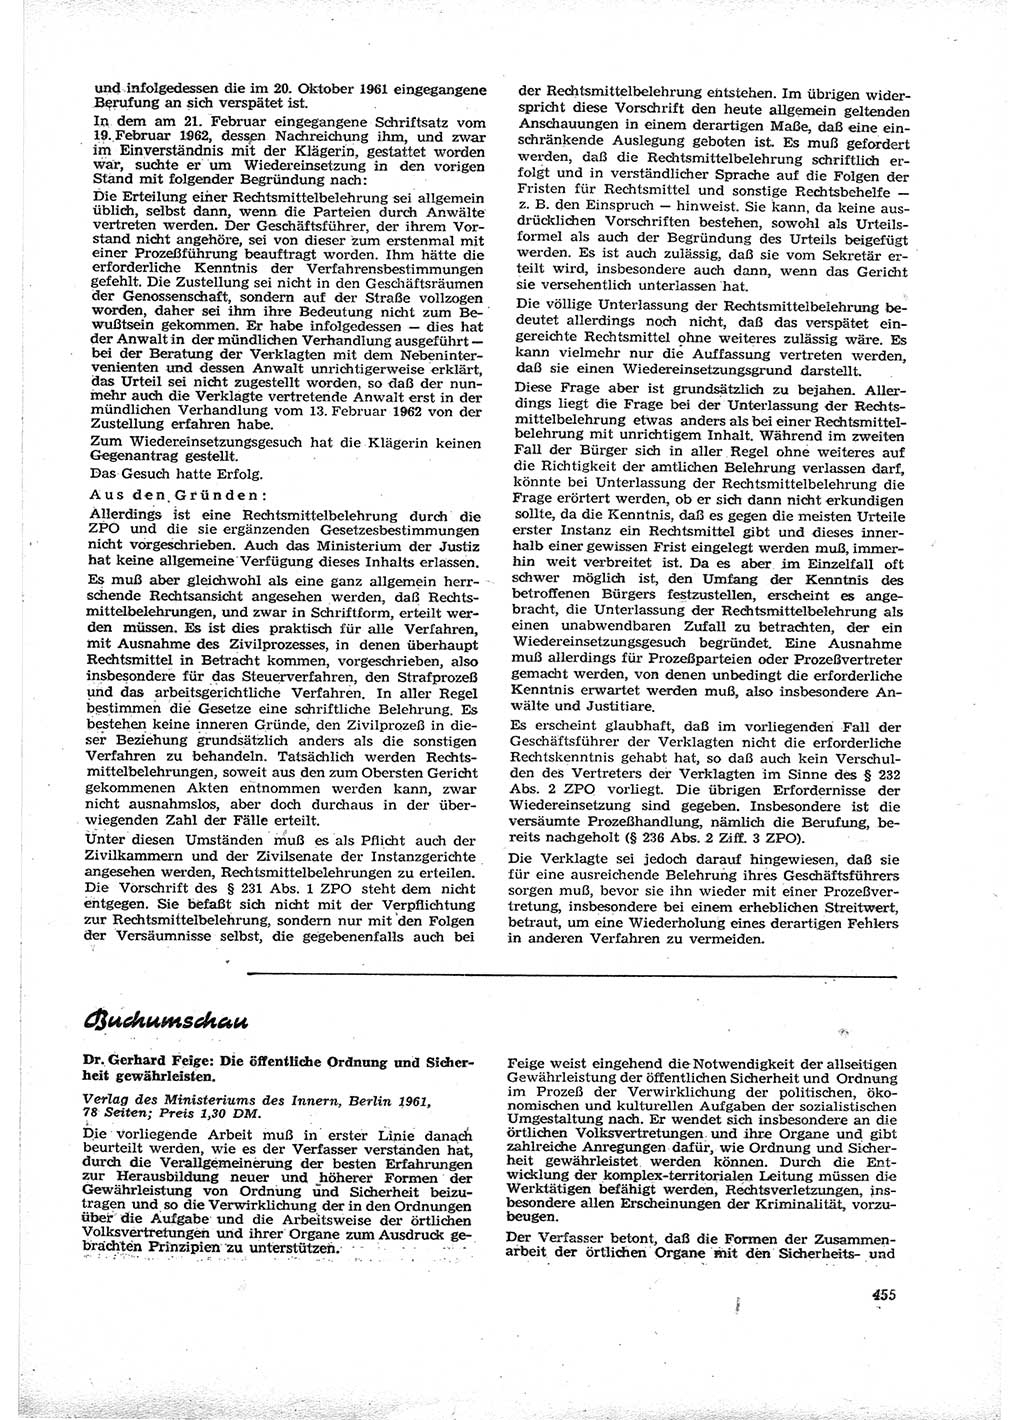 Neue Justiz (NJ), Zeitschrift für Recht und Rechtswissenschaft [Deutsche Demokratische Republik (DDR)], 16. Jahrgang 1962, Seite 455 (NJ DDR 1962, S. 455)